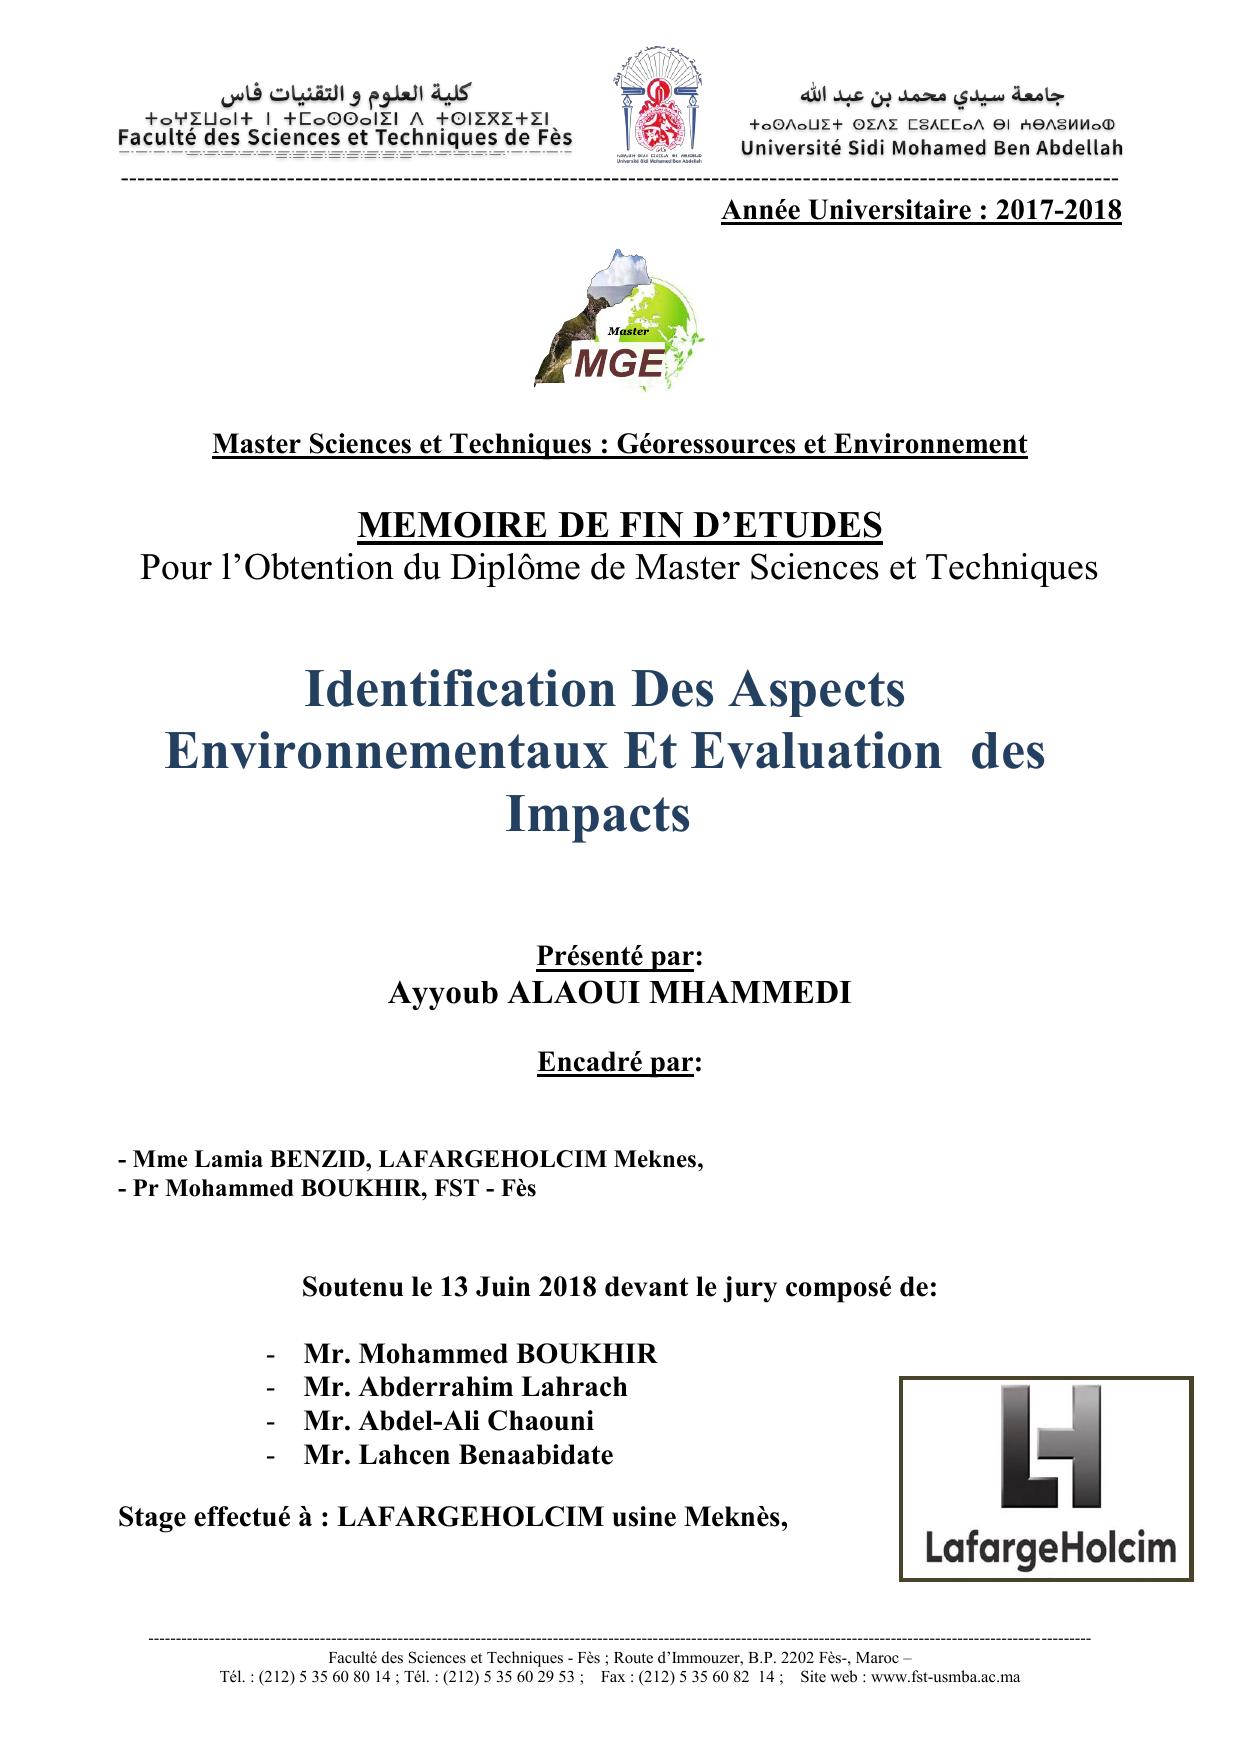 Identification Des Aspects Environnementaux Et Evaluation des Impacts